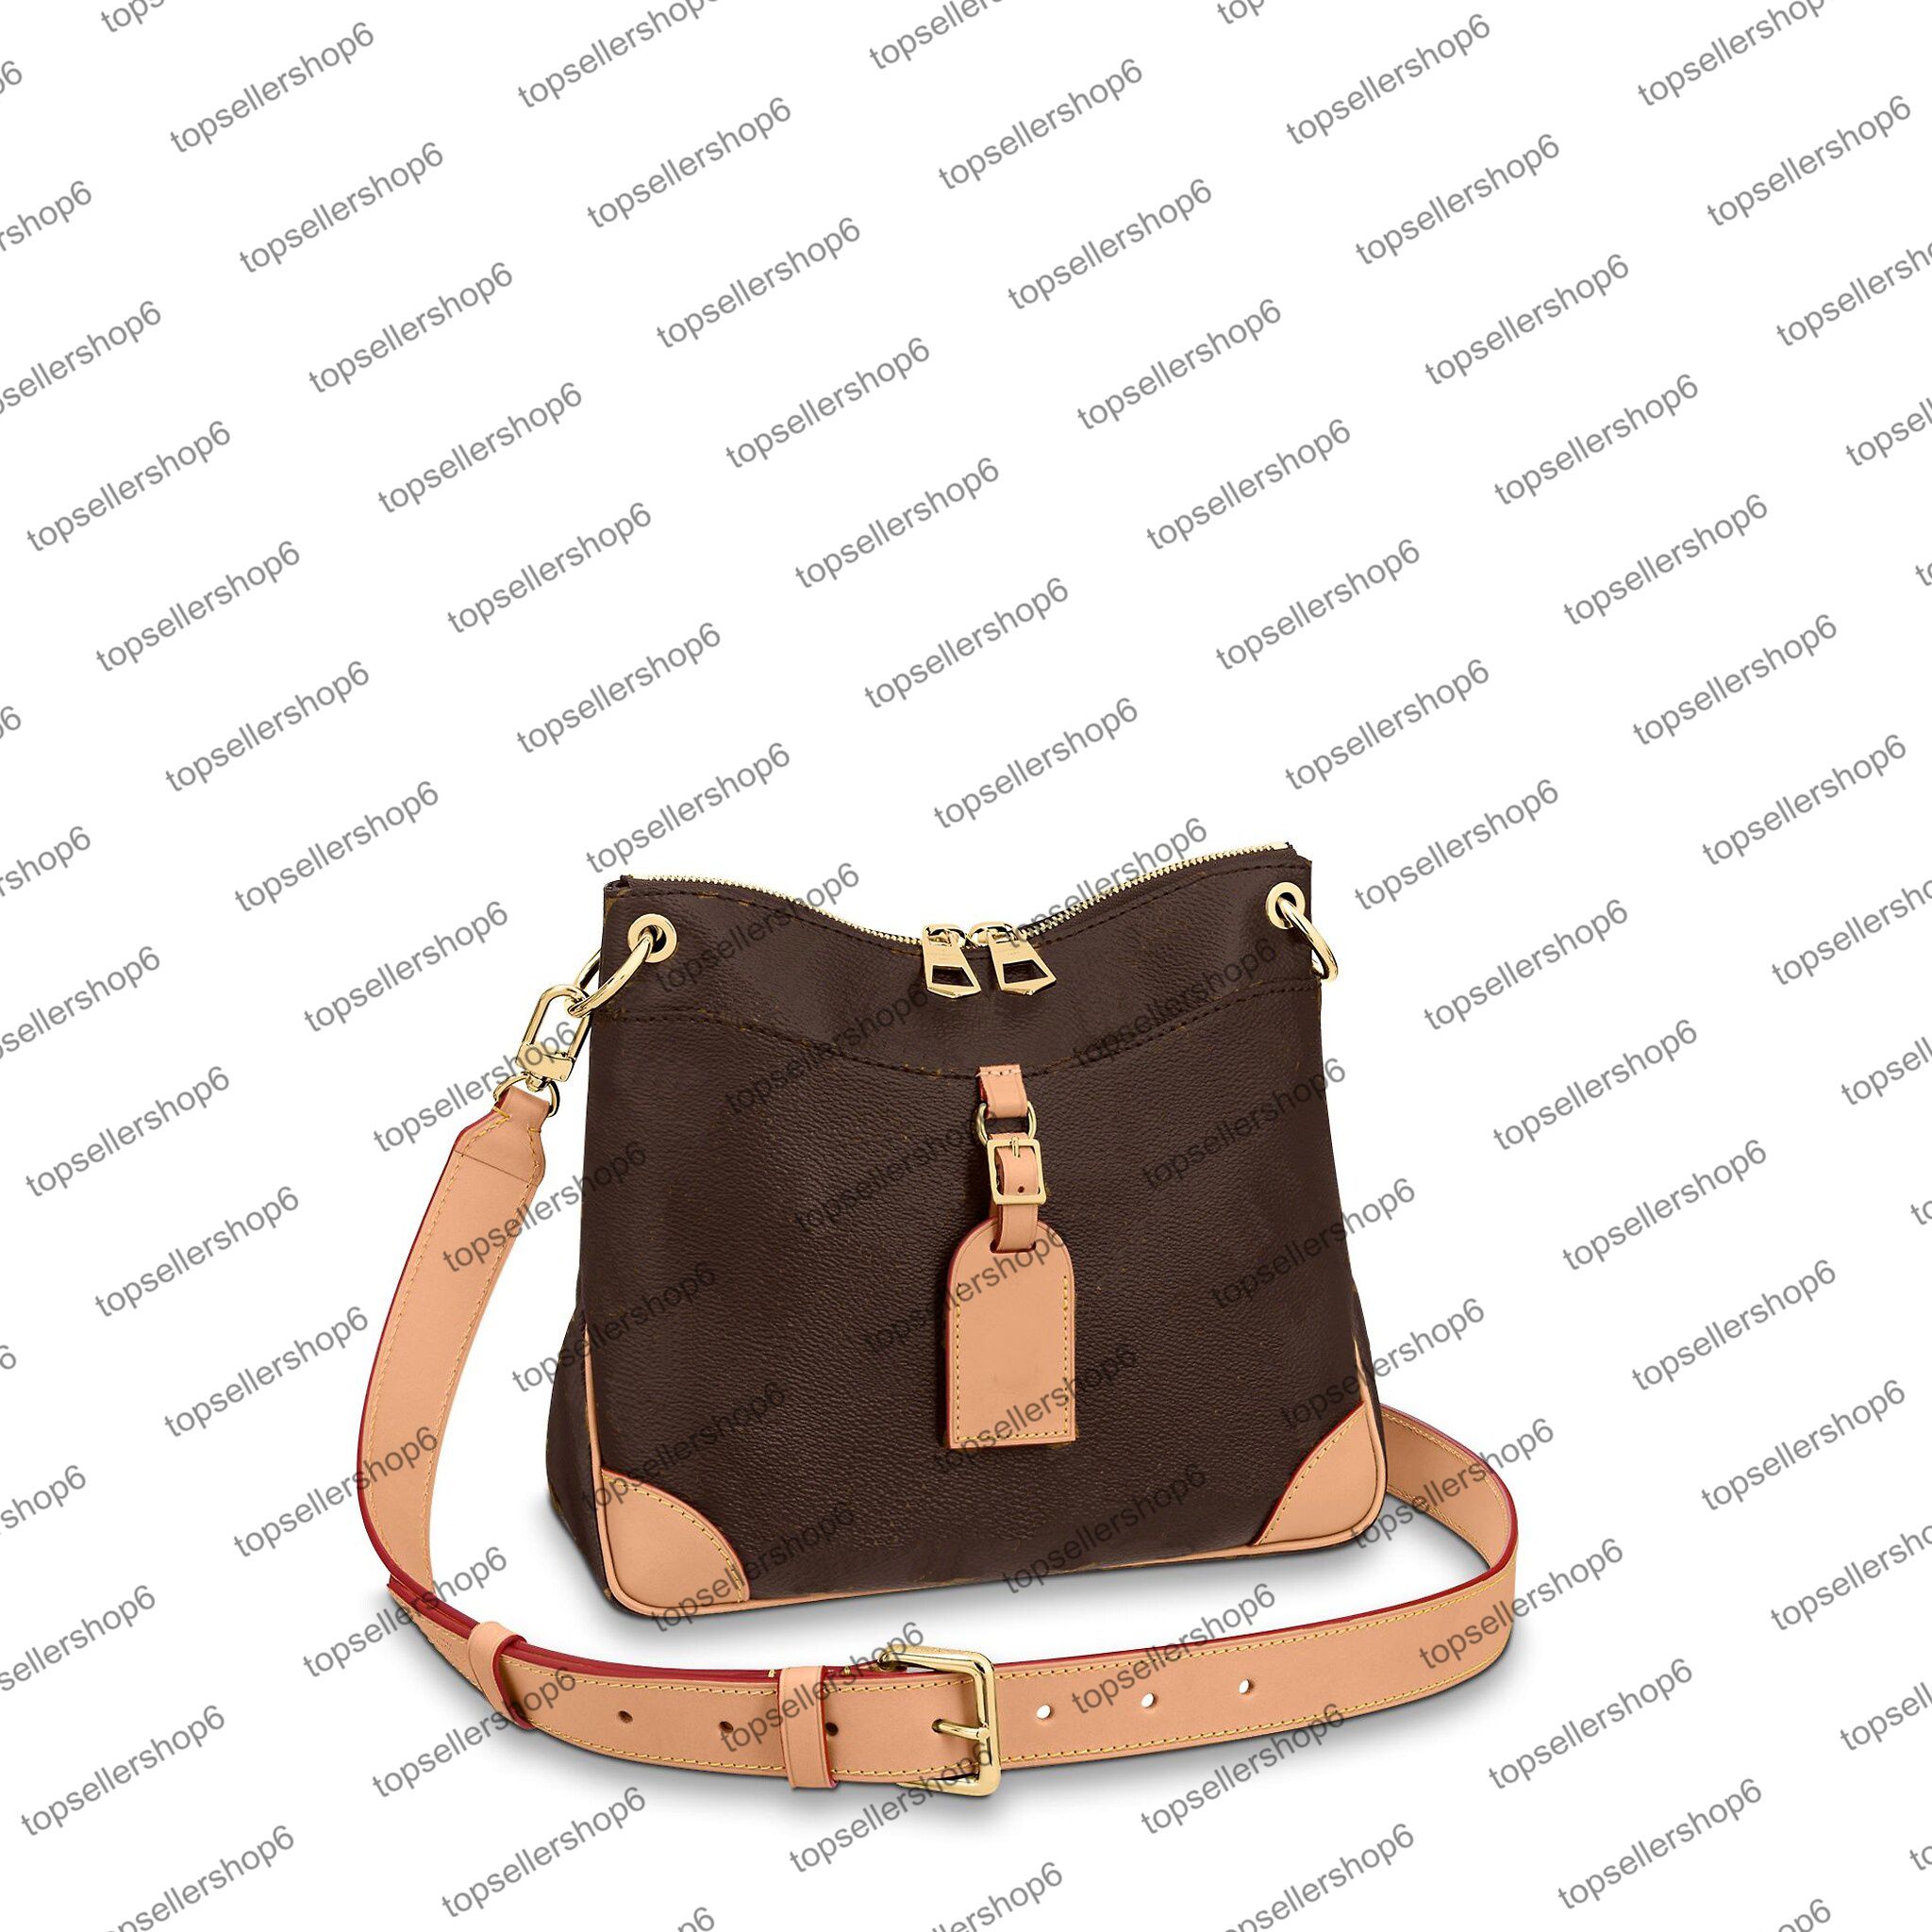 Shoulder Bag TOP. M45355 ODEON MM PM Designer Handbag Hobo Clutch